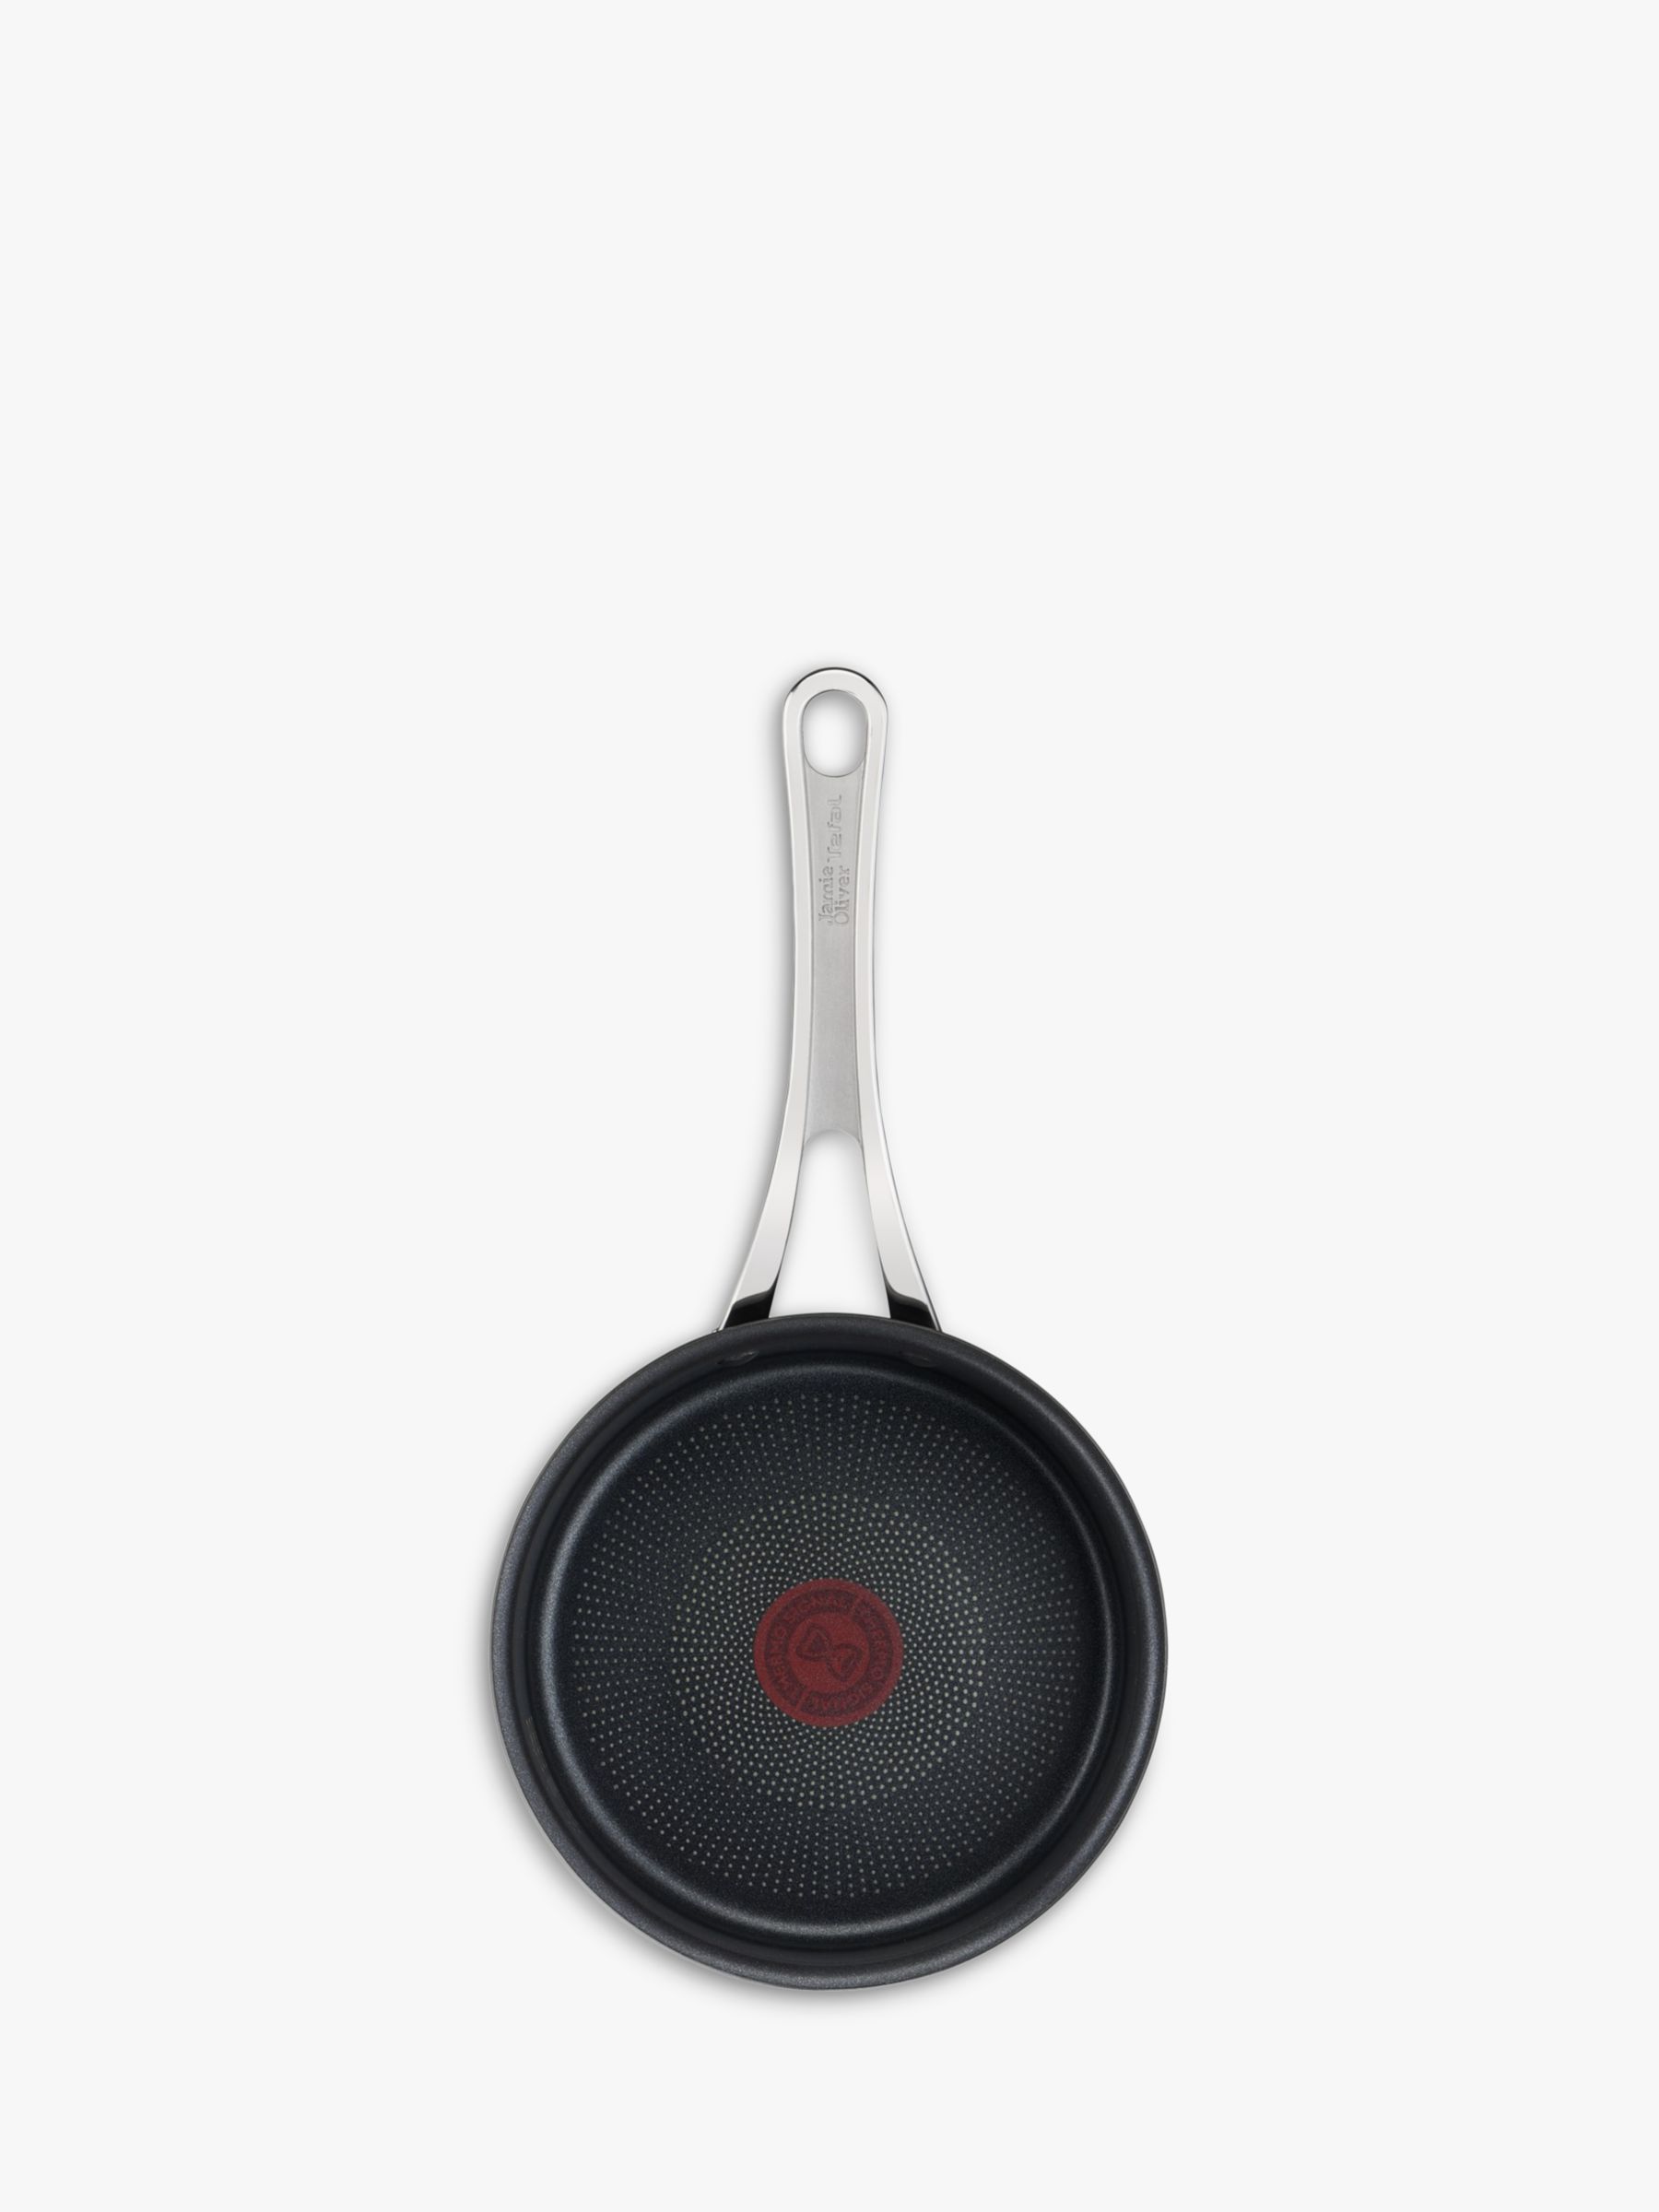 Noel Grimley Electrics - Tefal Jamie Oliver Everyday 3 Saucepan Set H808S344